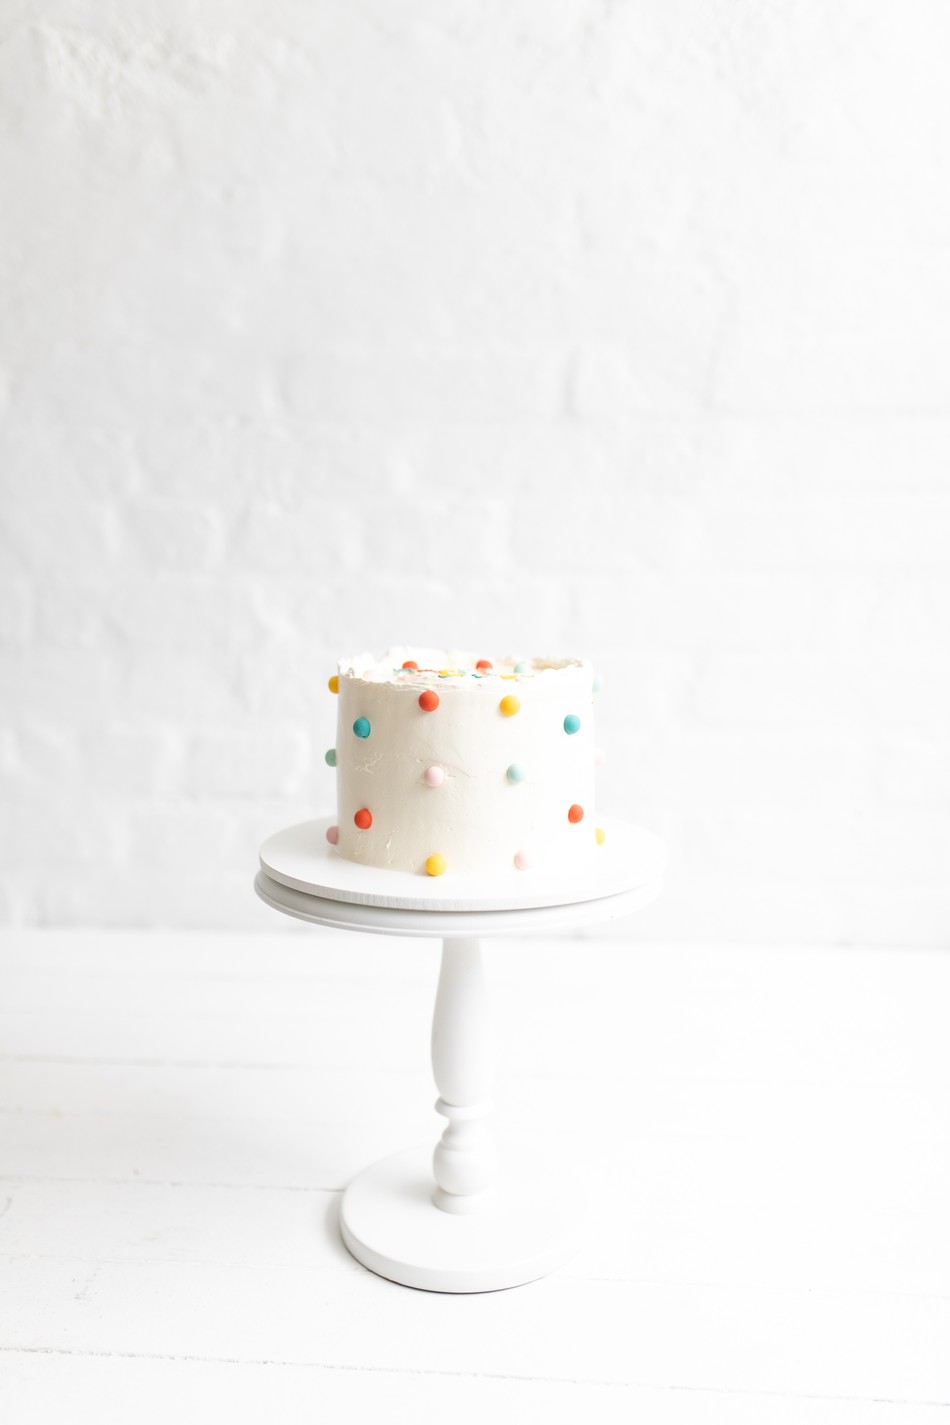 poá cake (happy birthday)